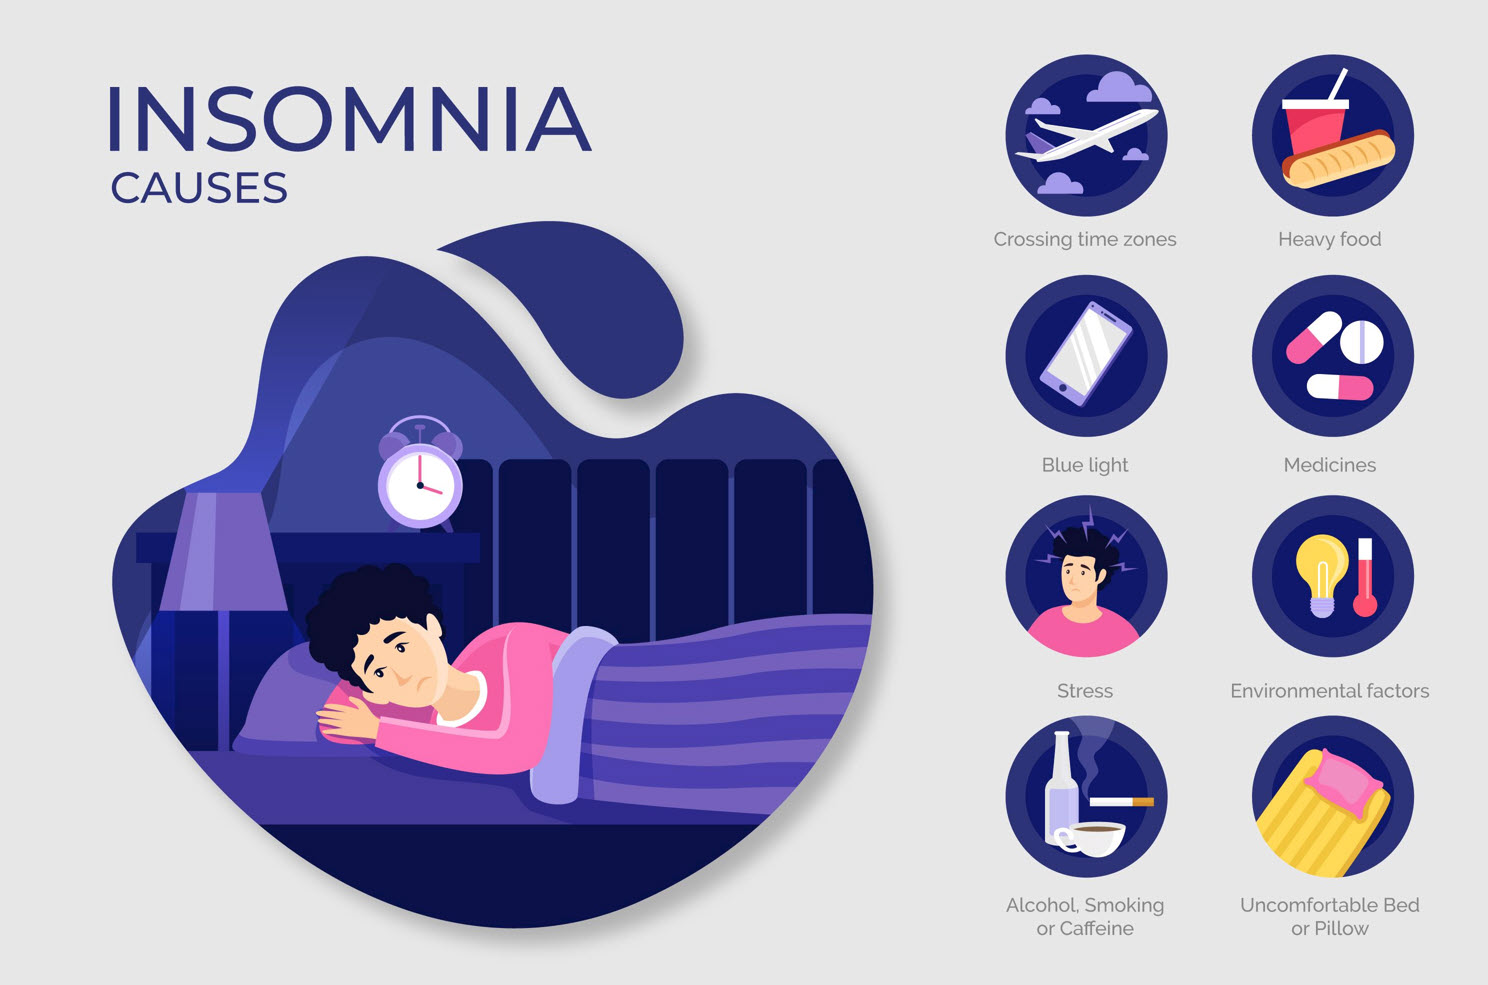 Insomnia causes